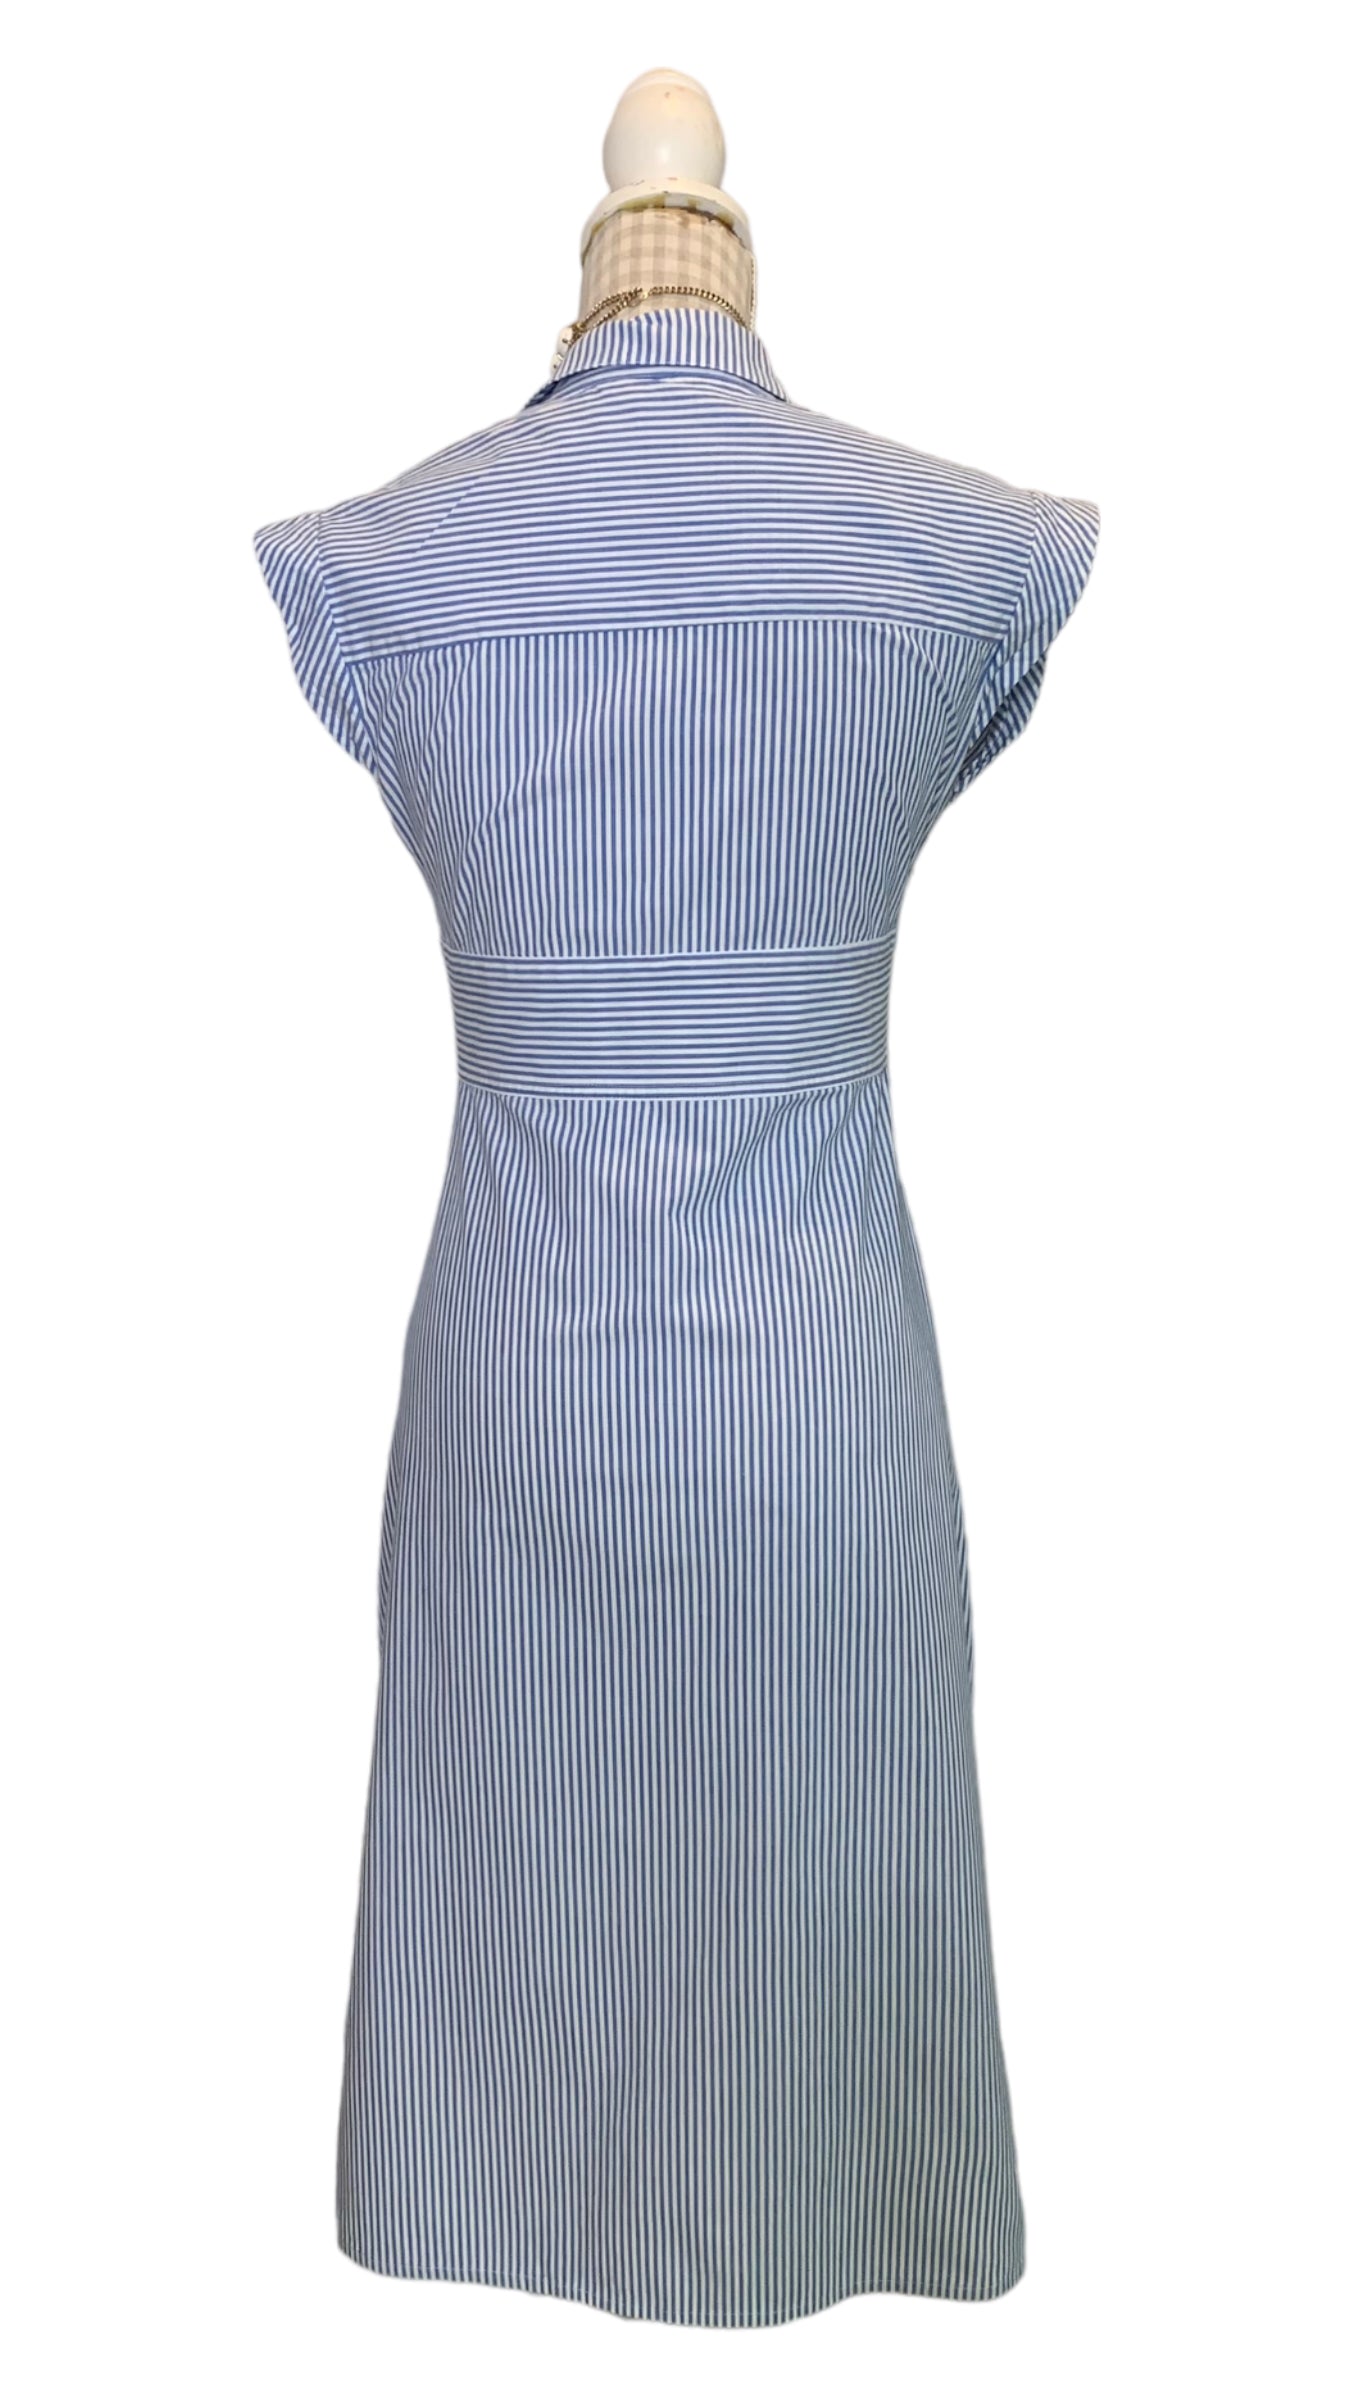 Vintage Blue Striped Summer Dress Size UK 8-10